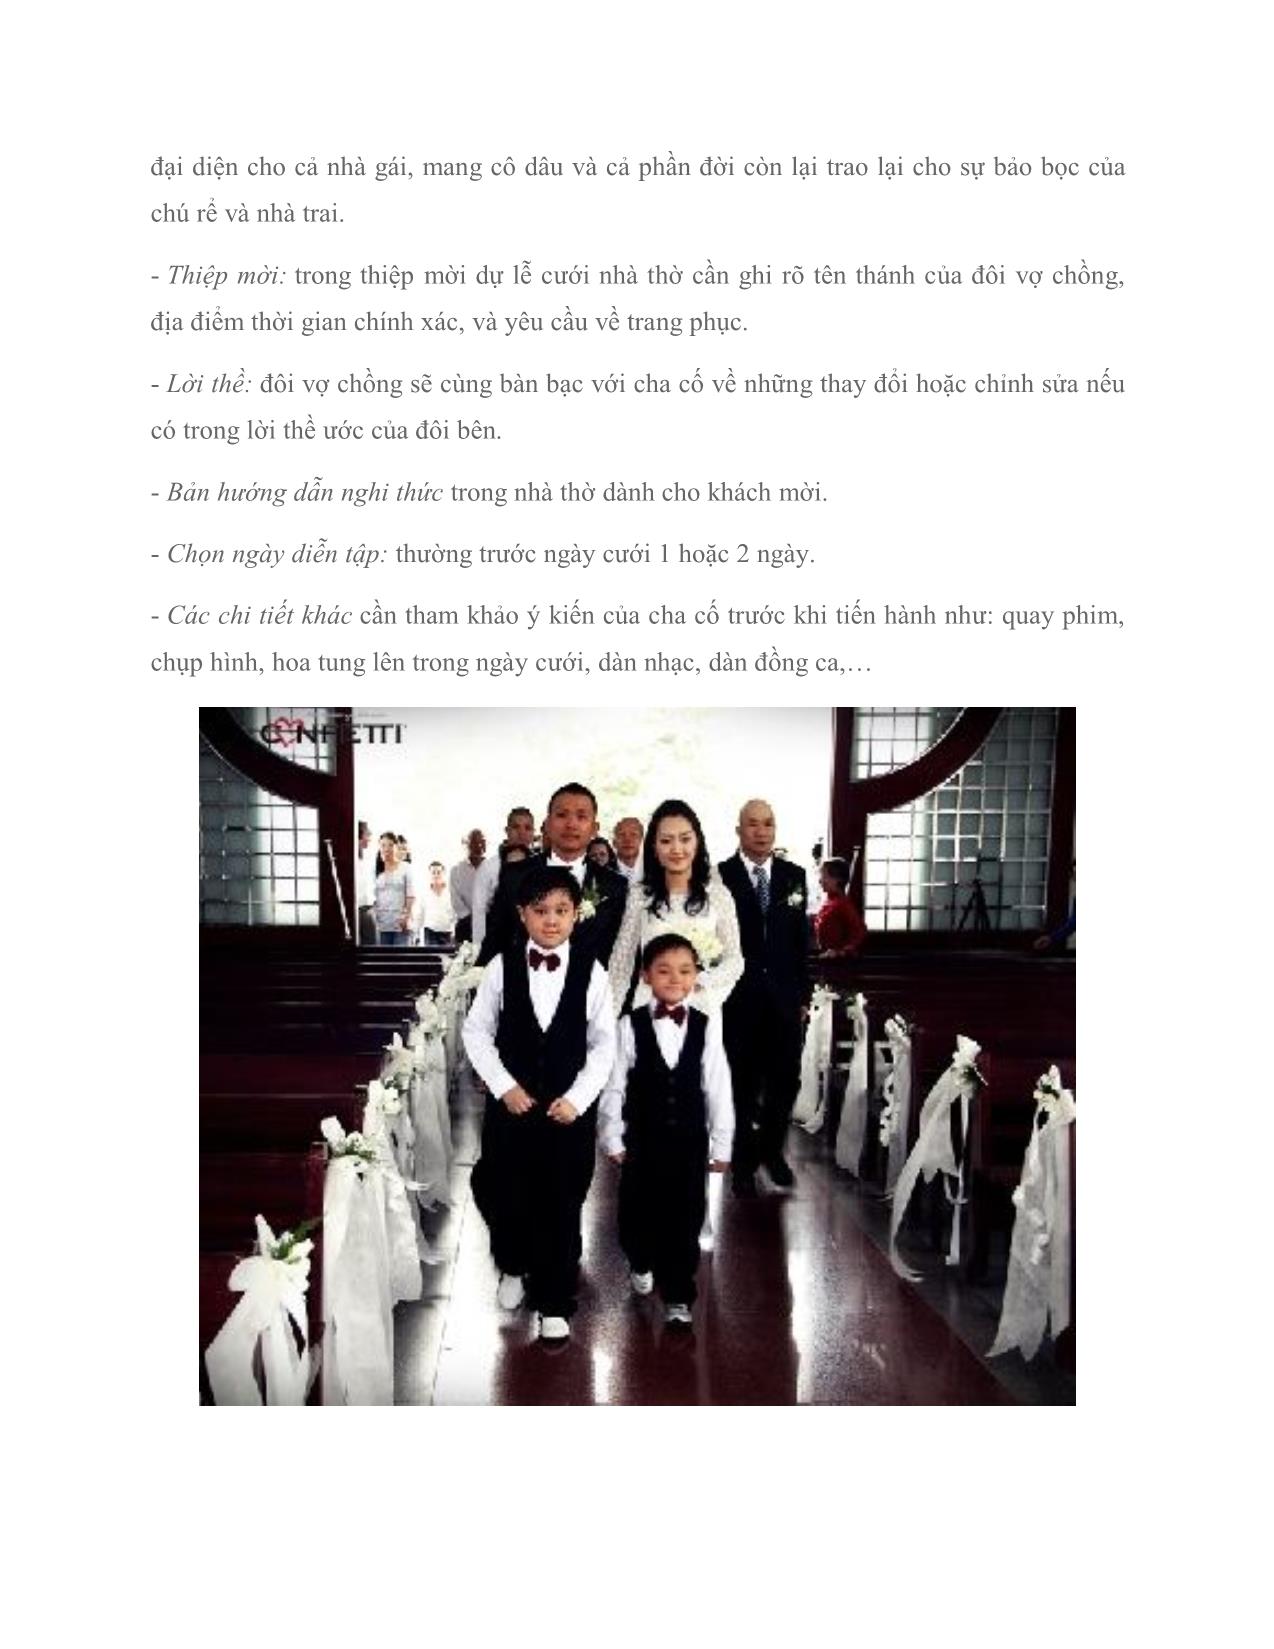 Chuẩn bị cho lễ cưới trong nhà thờ trang 4